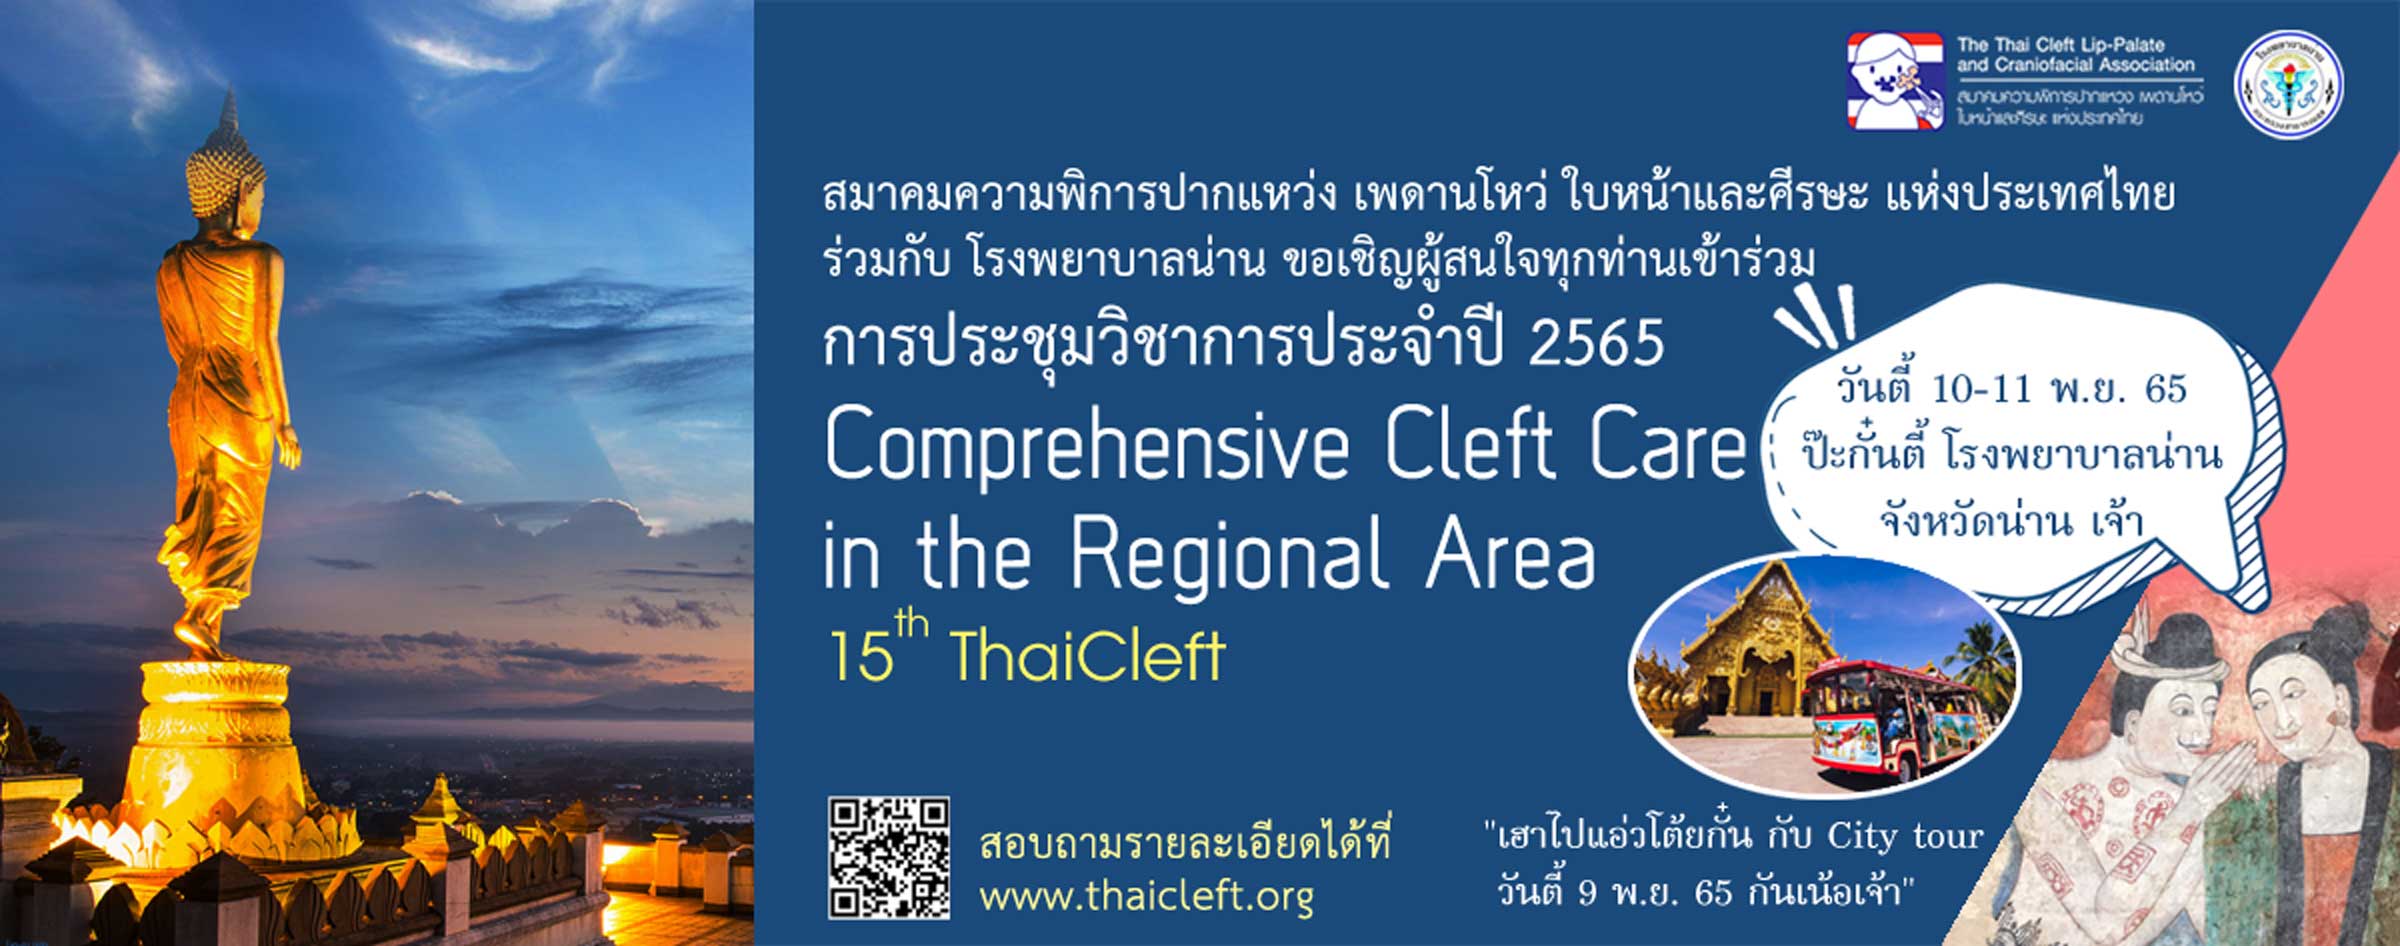 การประชุมวิชาการประจำปี 2565 ครั้งที่ 15 สมาคมความพิการปากแหว่ง เพดานโหว่ ใบหน้าและศีรษะ แห่งประเทศไทย